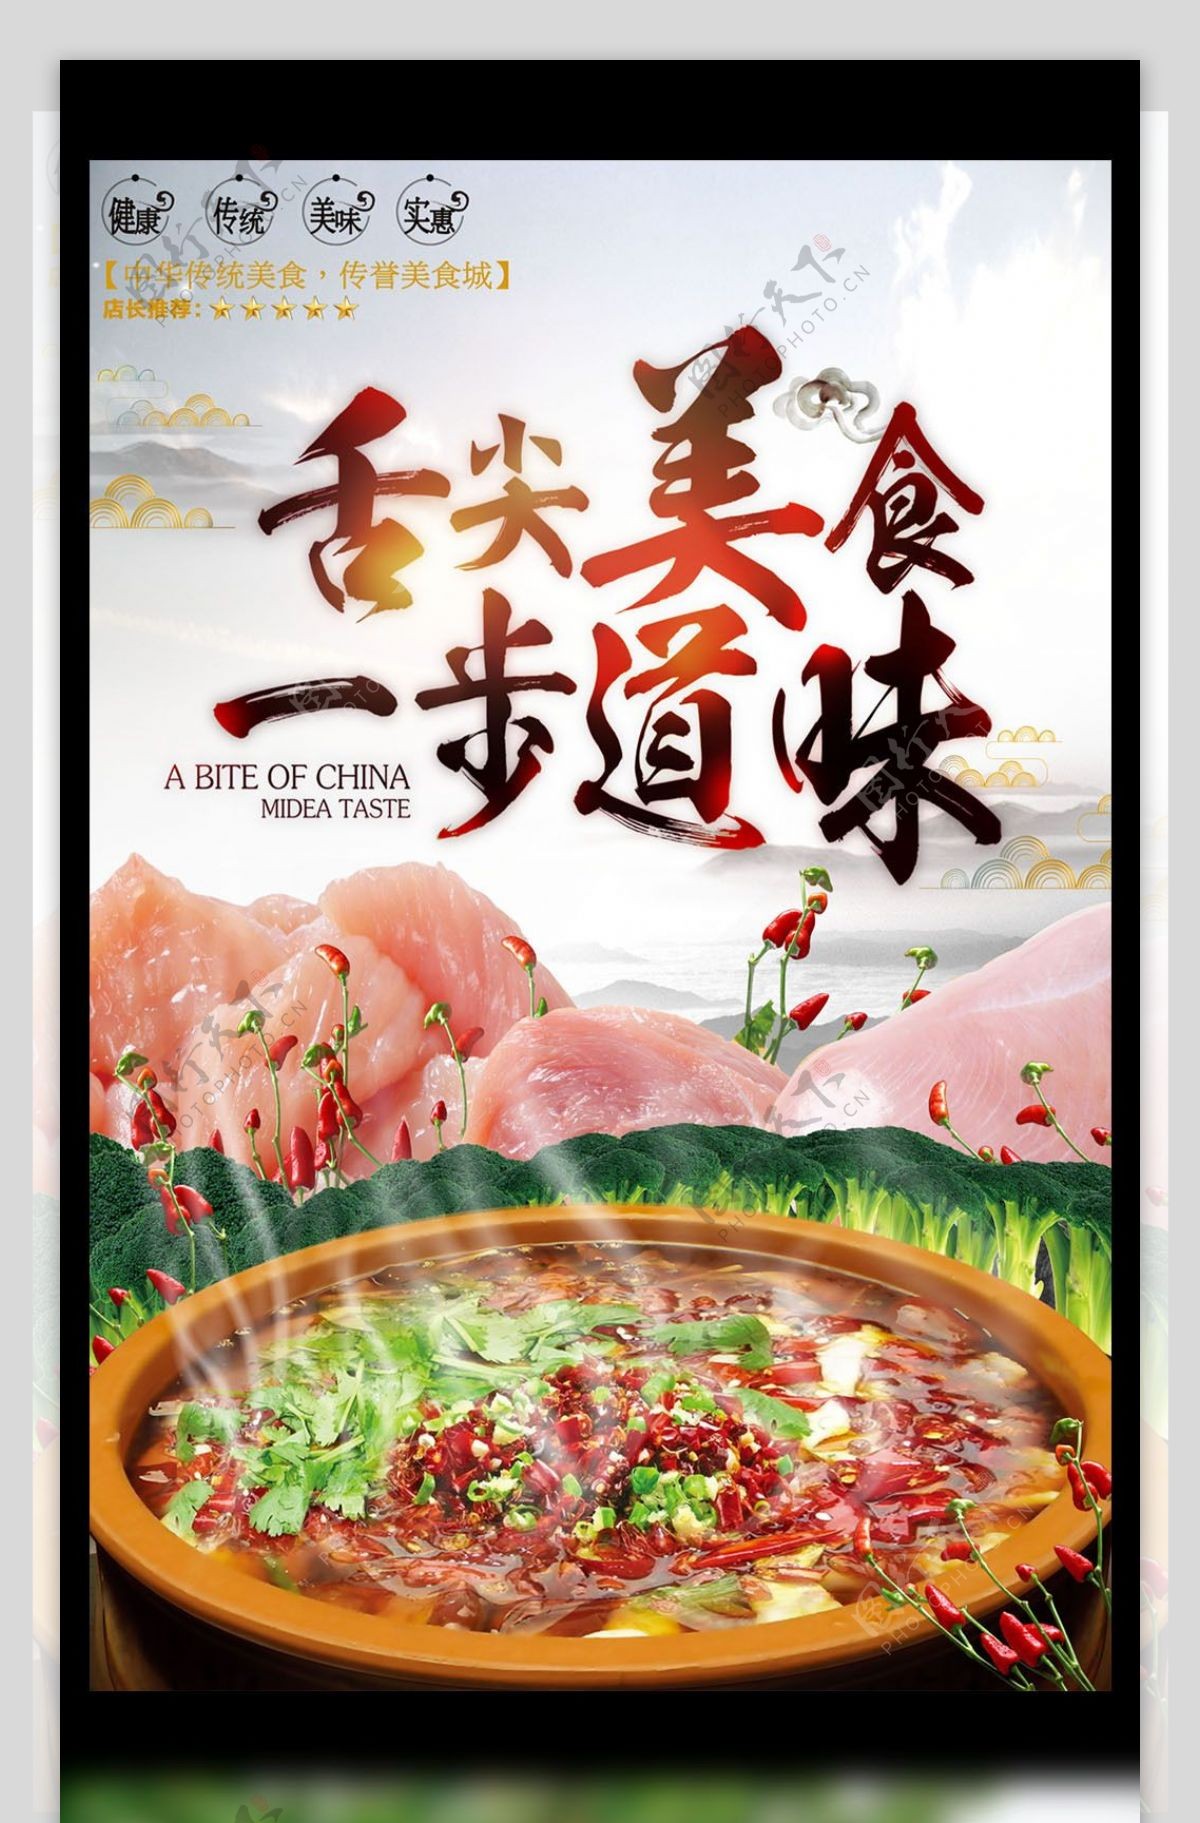 大气唯美创新餐饮宣传麻辣火锅海报模板